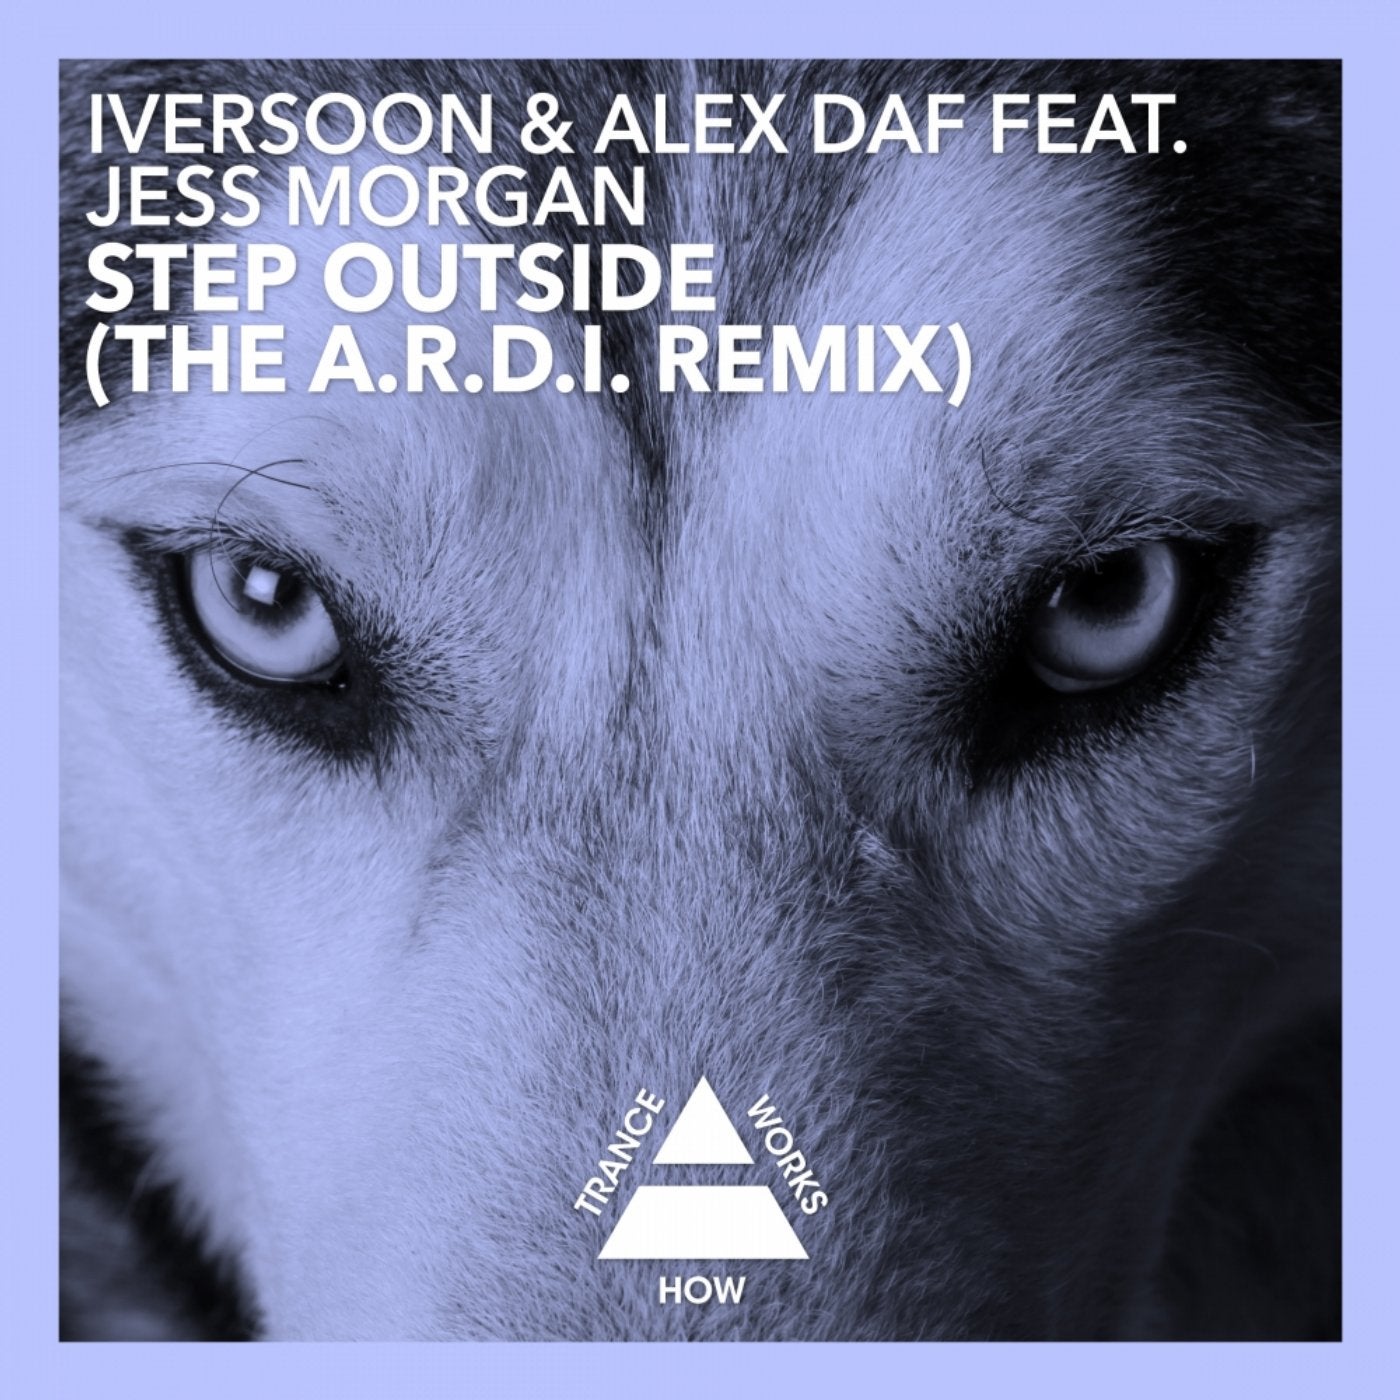 Step Outside (A.R.D.I. Remix)